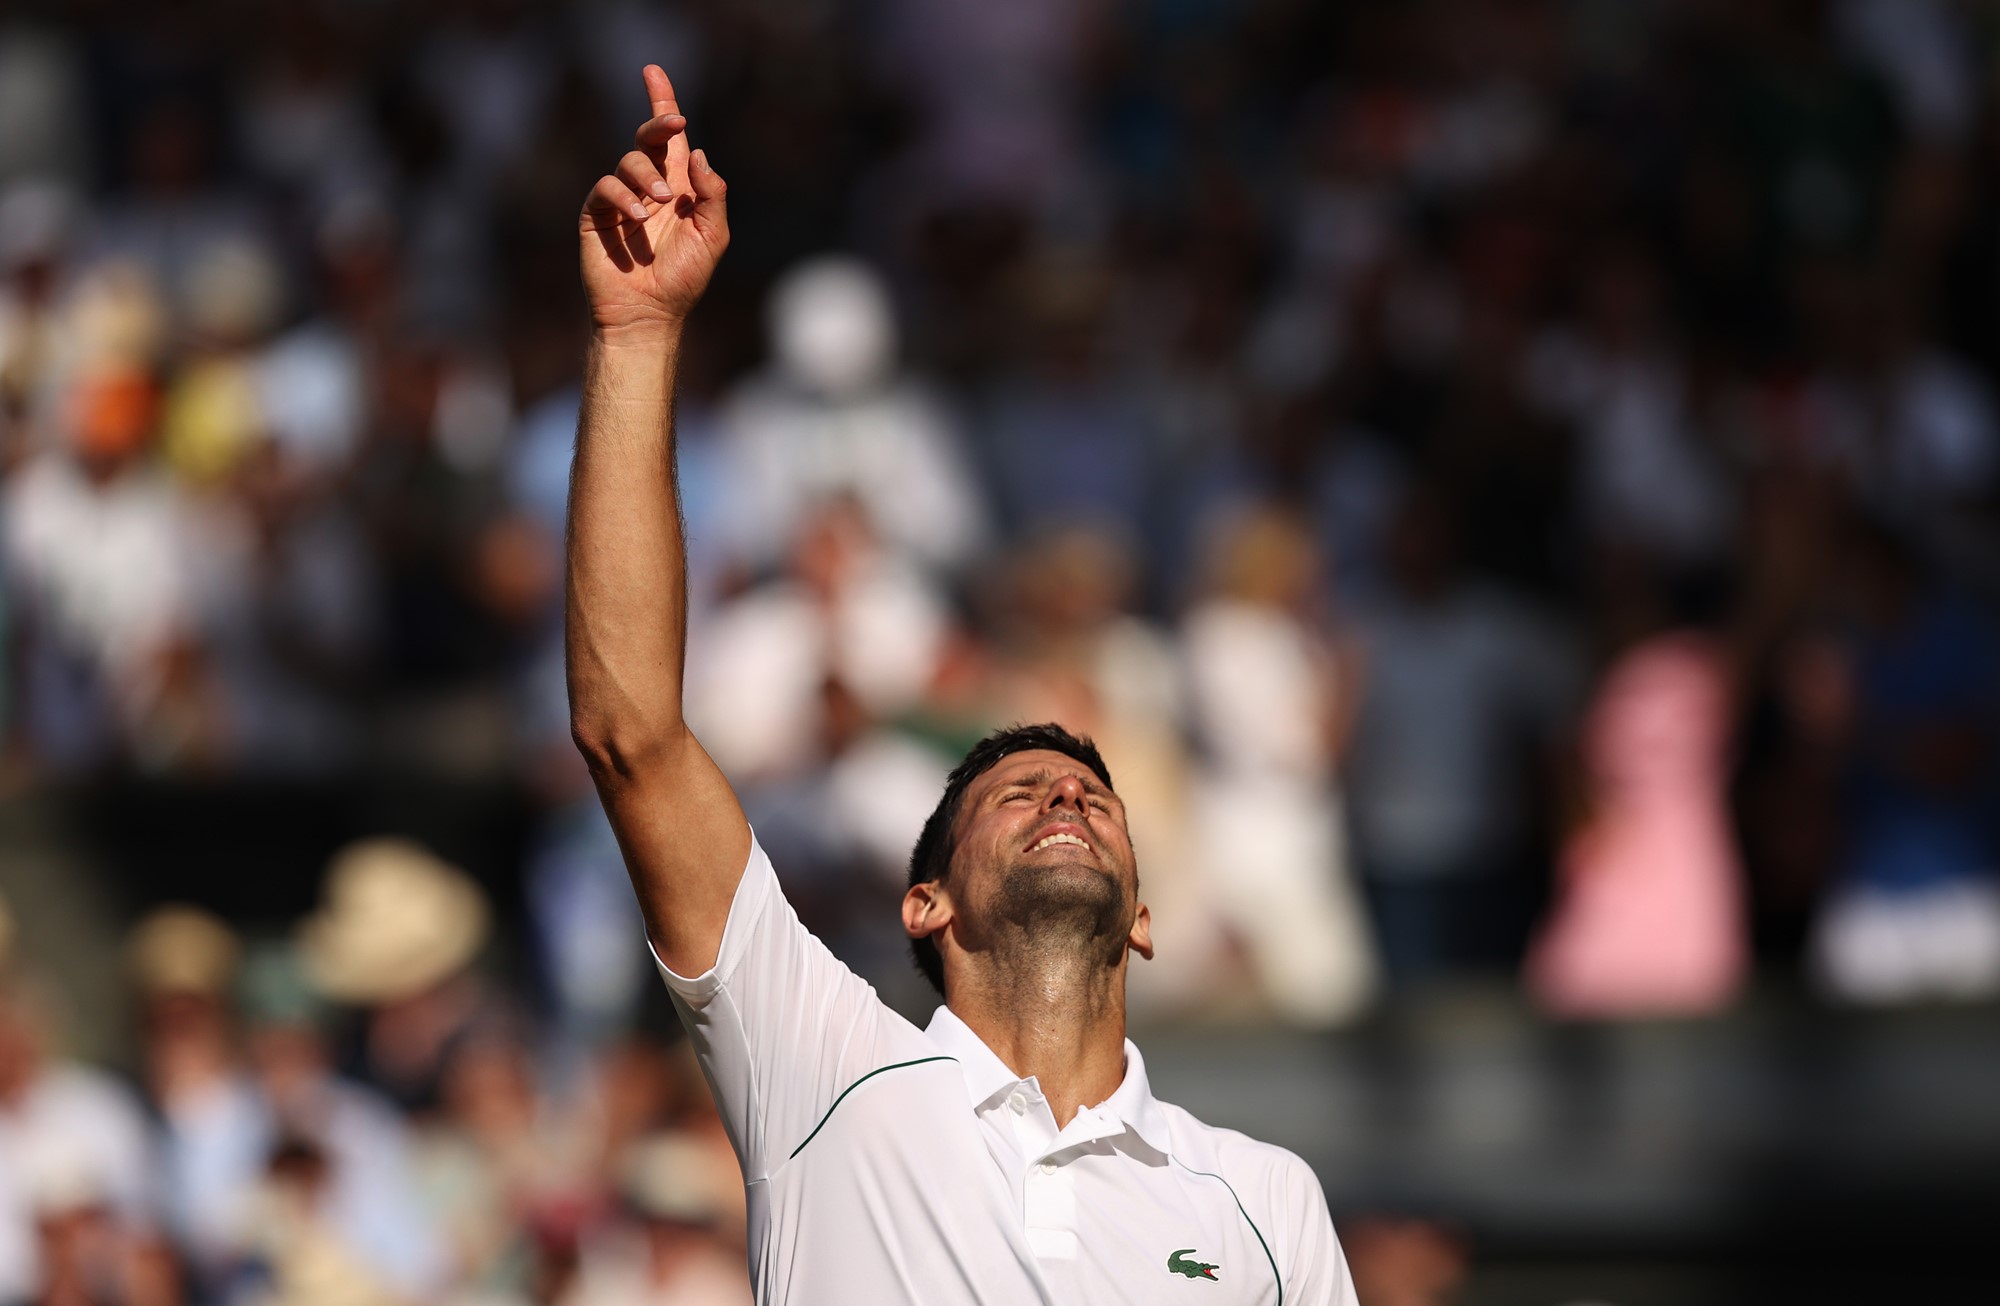 Wimbledon: Djokovic vira contra Kyrgios e encosta em Nadal - 10/07/2022 -  Esporte - Folha